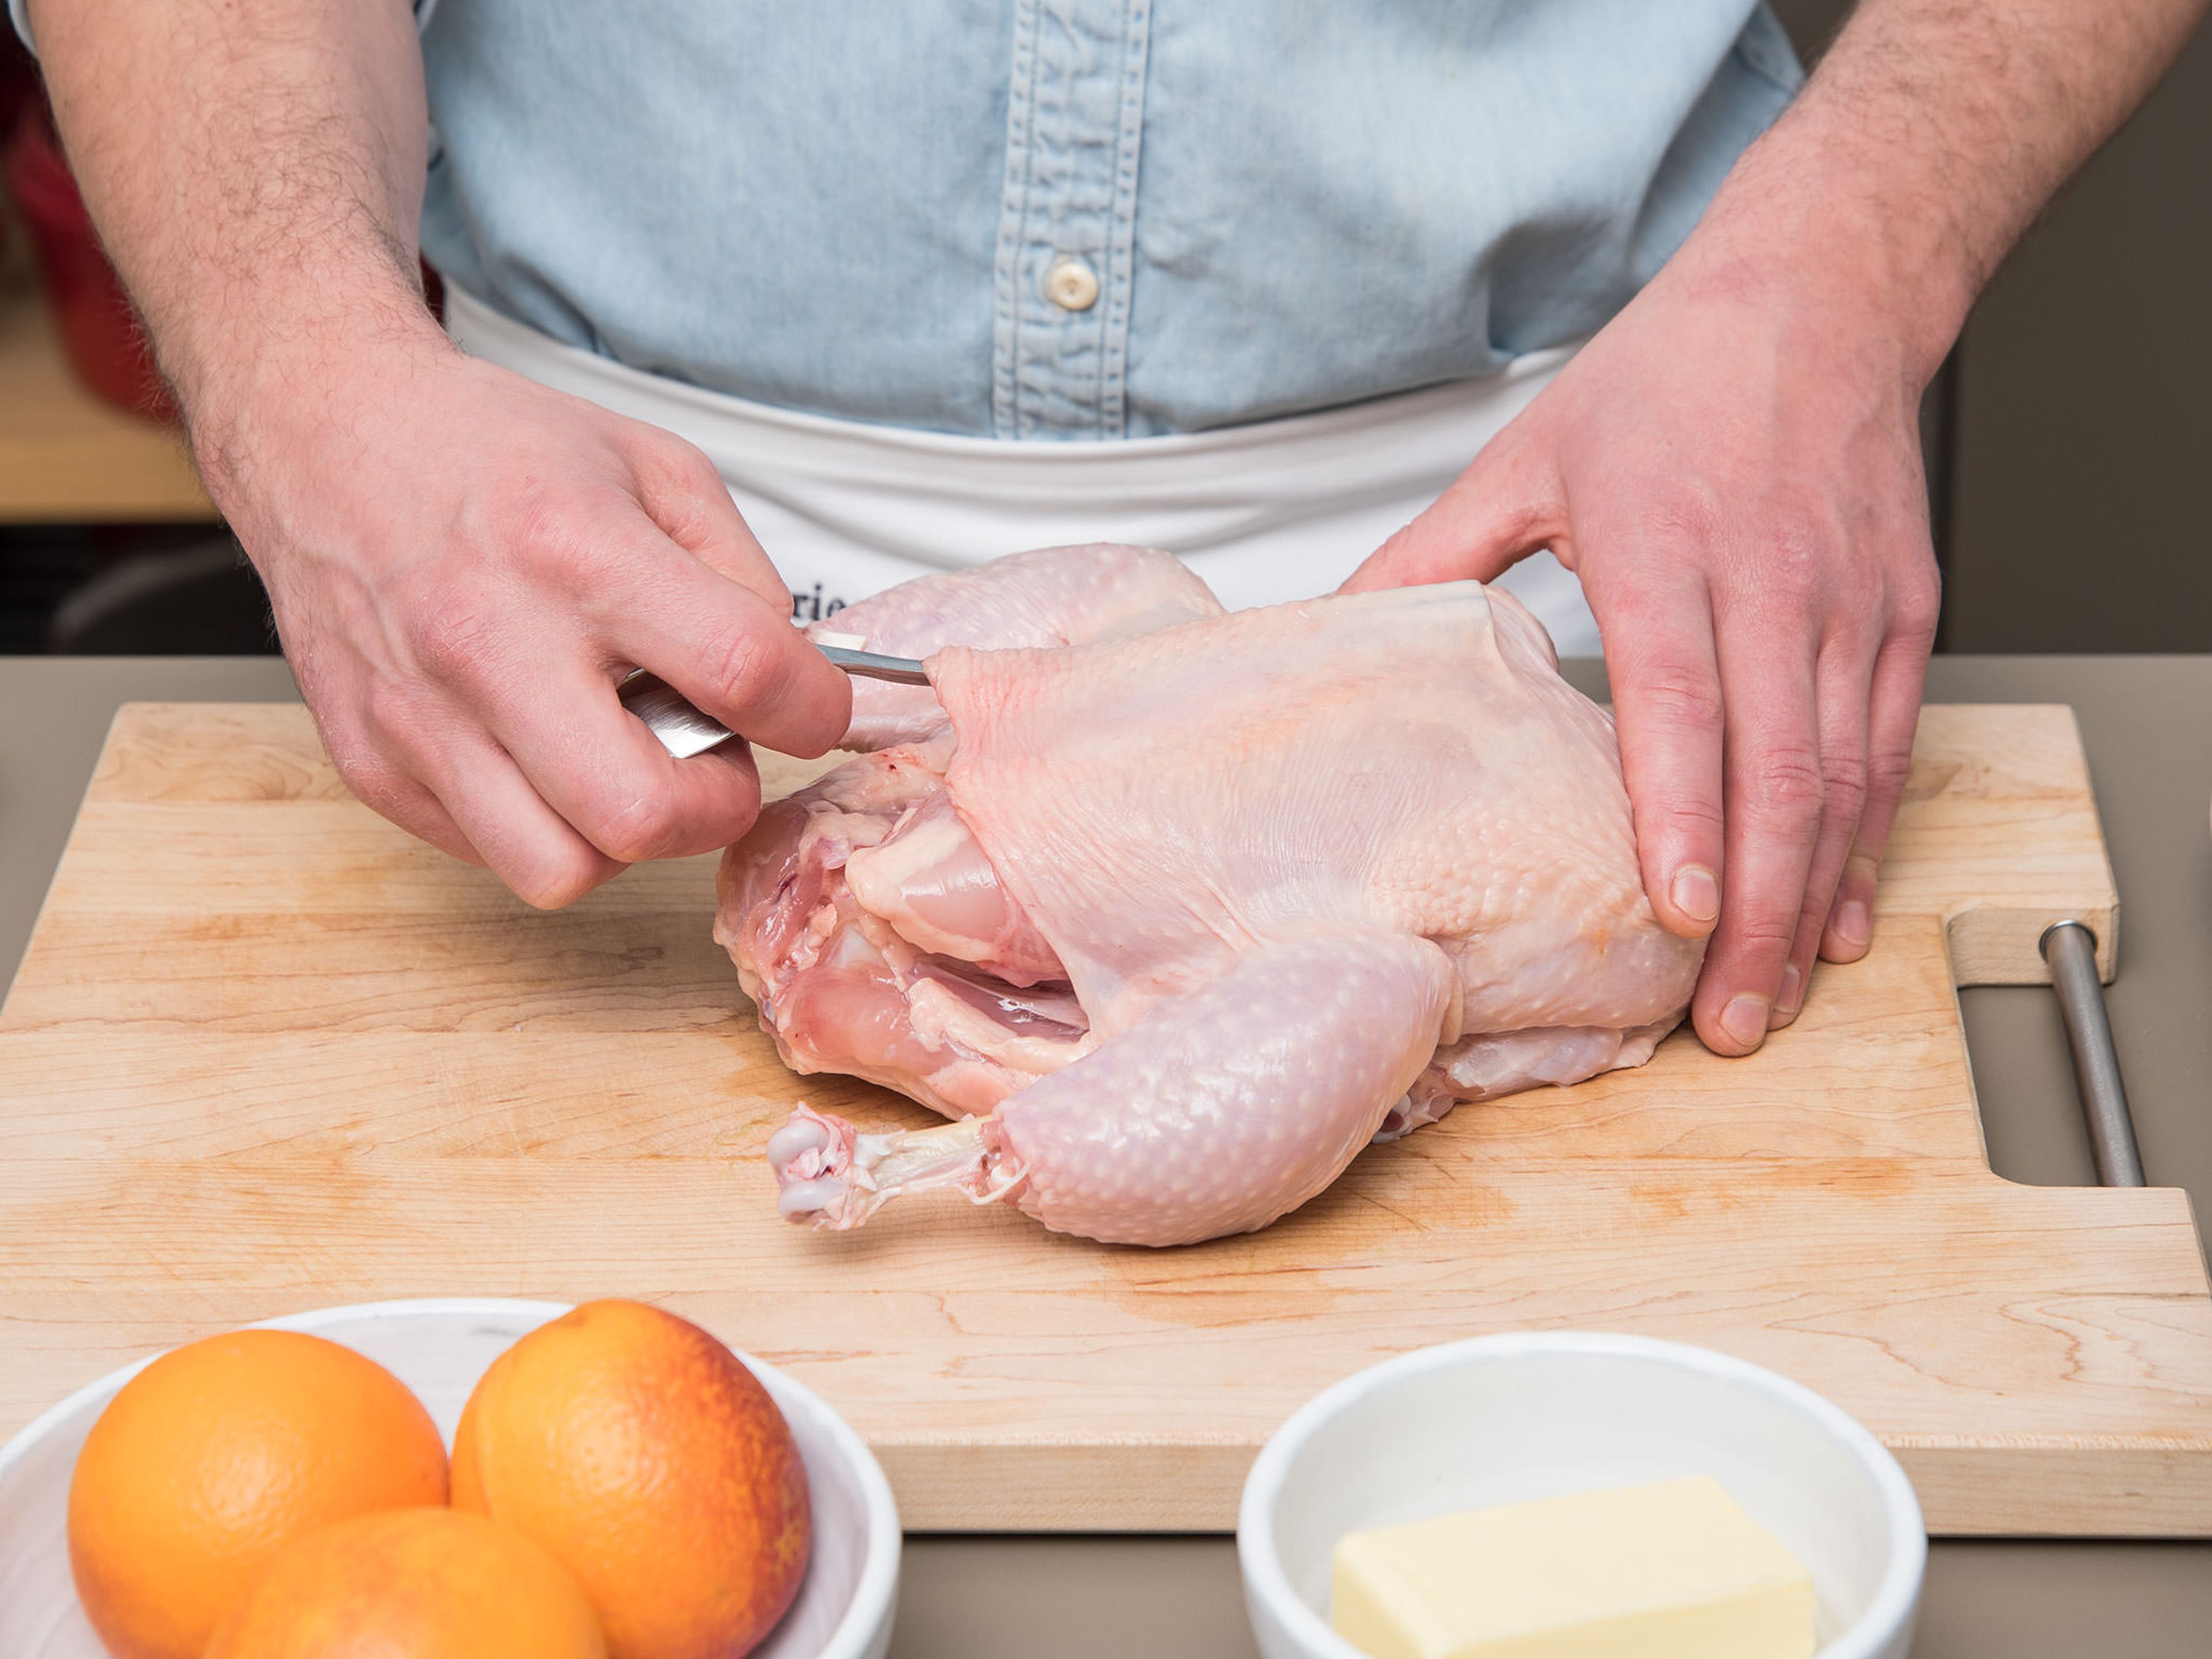 Backofen auf 180°C vorheizen. Mit dem Stiel eines Löffels von der Brustseite beginnend vorsichtig unter die Haut des Hähnchens fahren um diese vom Fleisch zu lösen. Die Haut sollte dabei intakt bleiben. Das Hähnchen anschließend beiseitelegen.